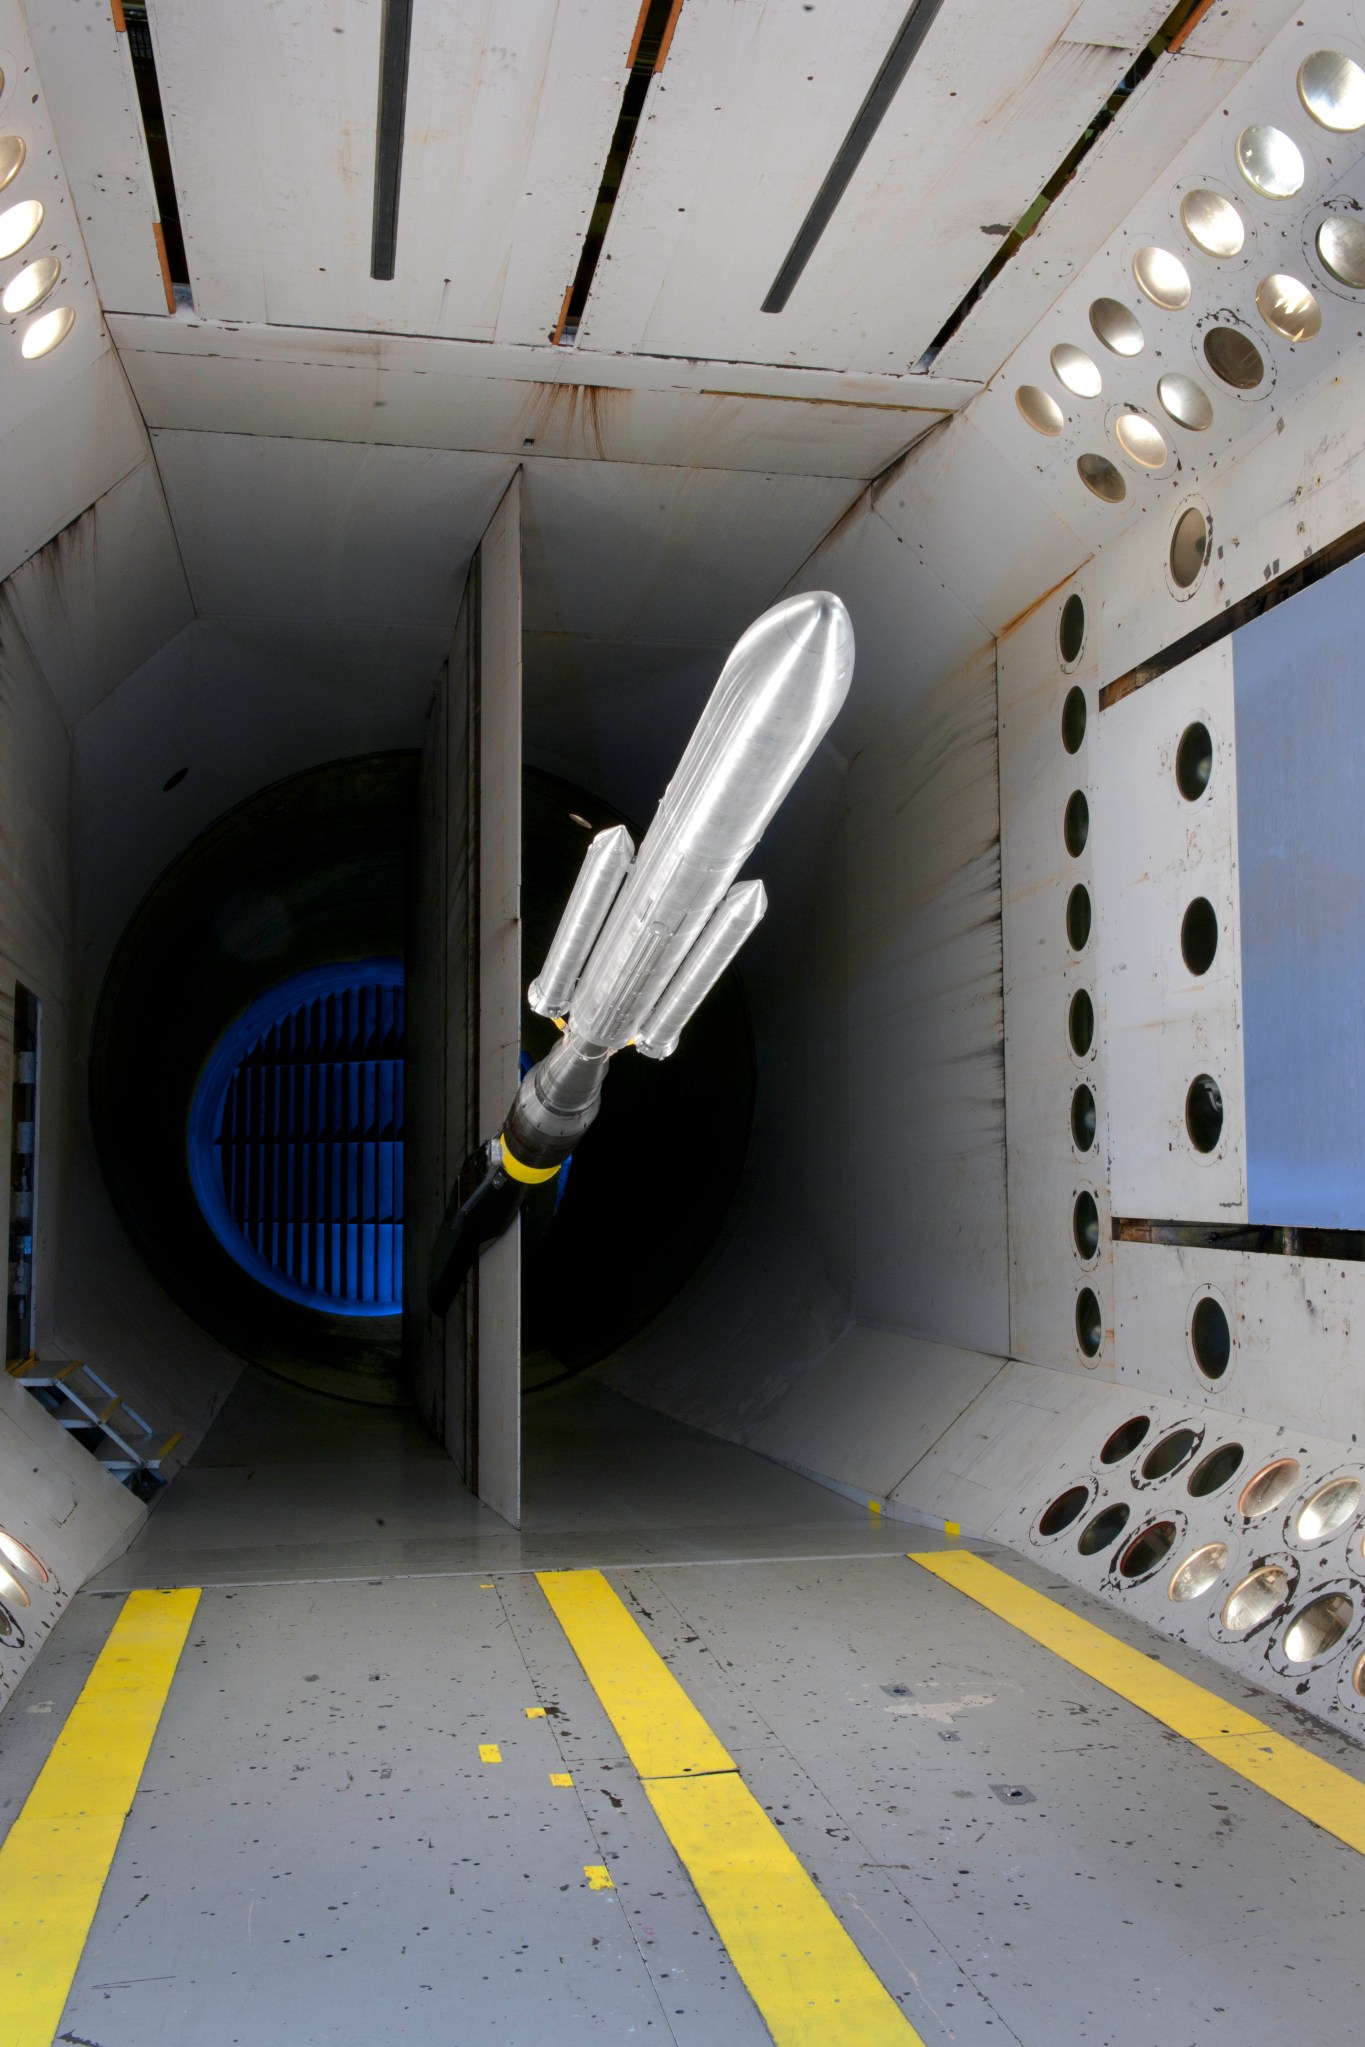 Model rocket in a wind tunnel